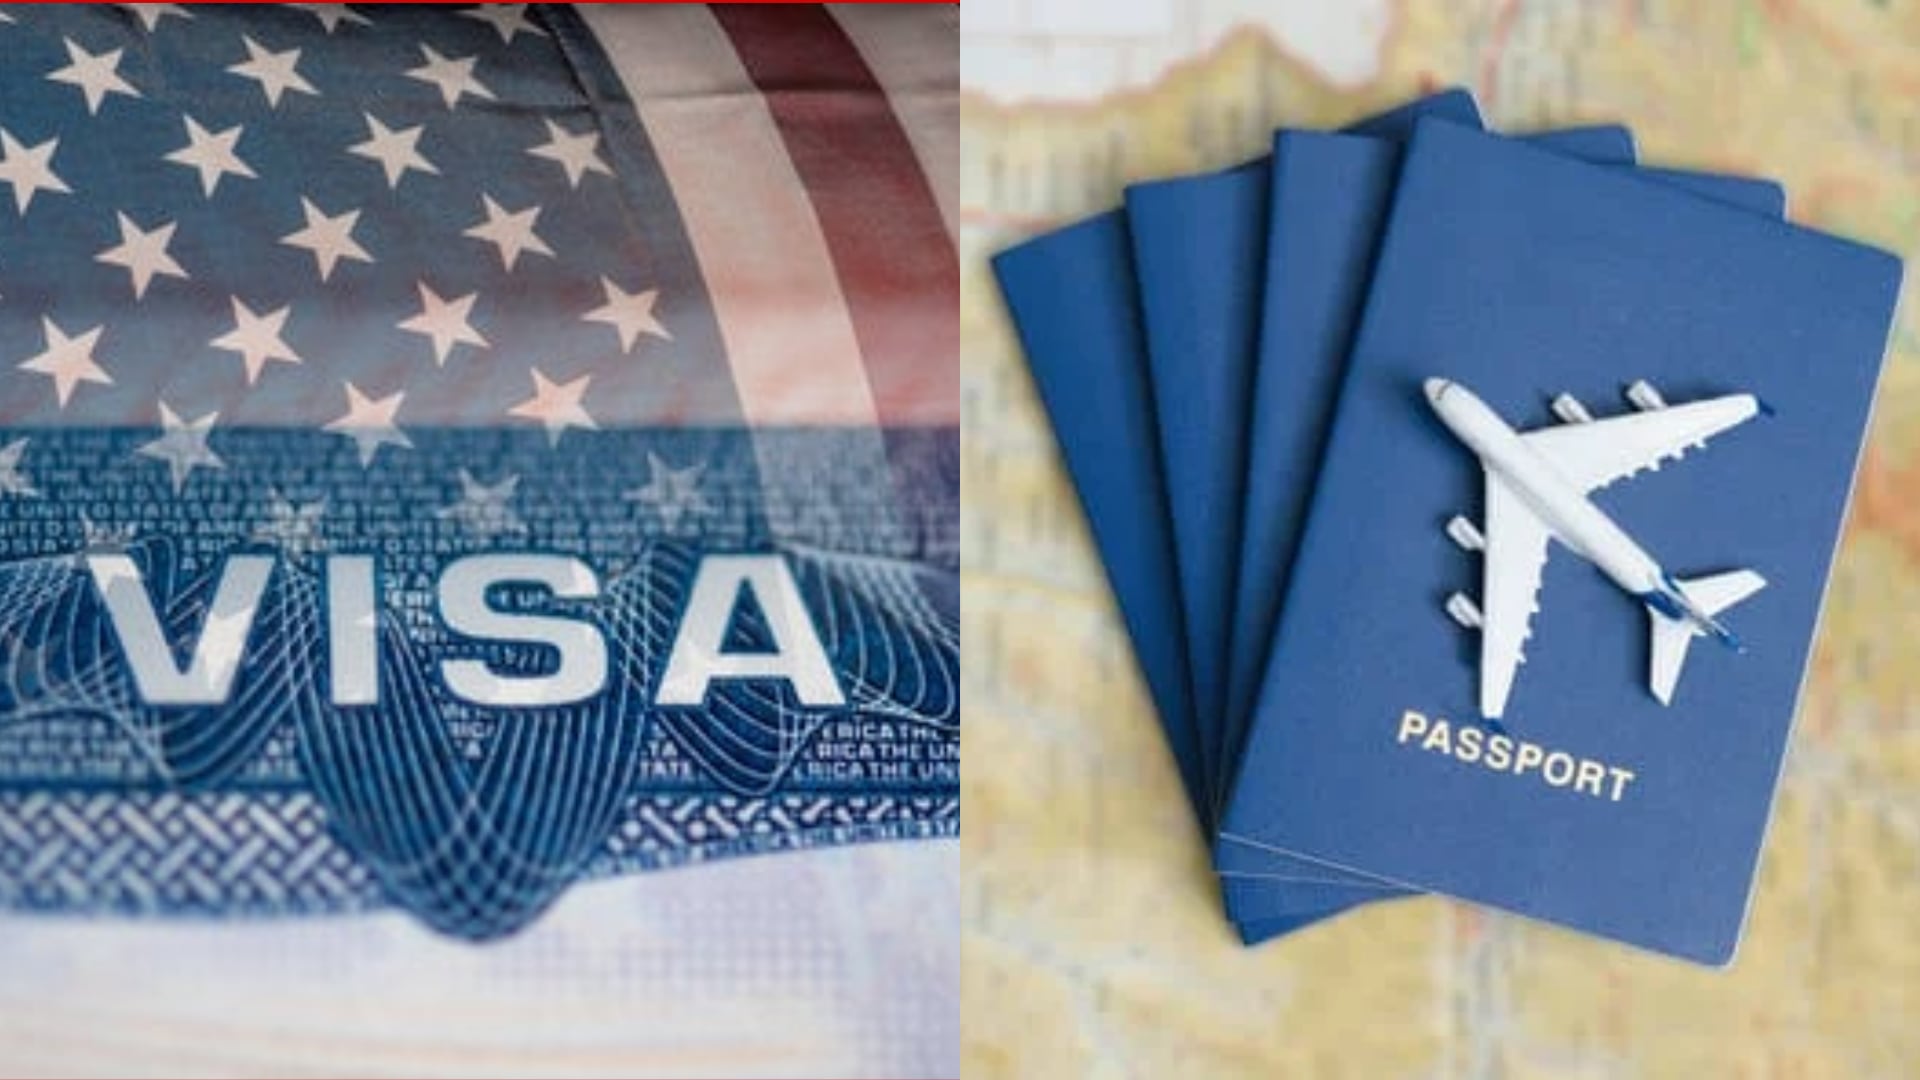 Los futuros viajeros deben conocer porqué necesitan actualizar la visa antes de ingresar a Estados Unidos.